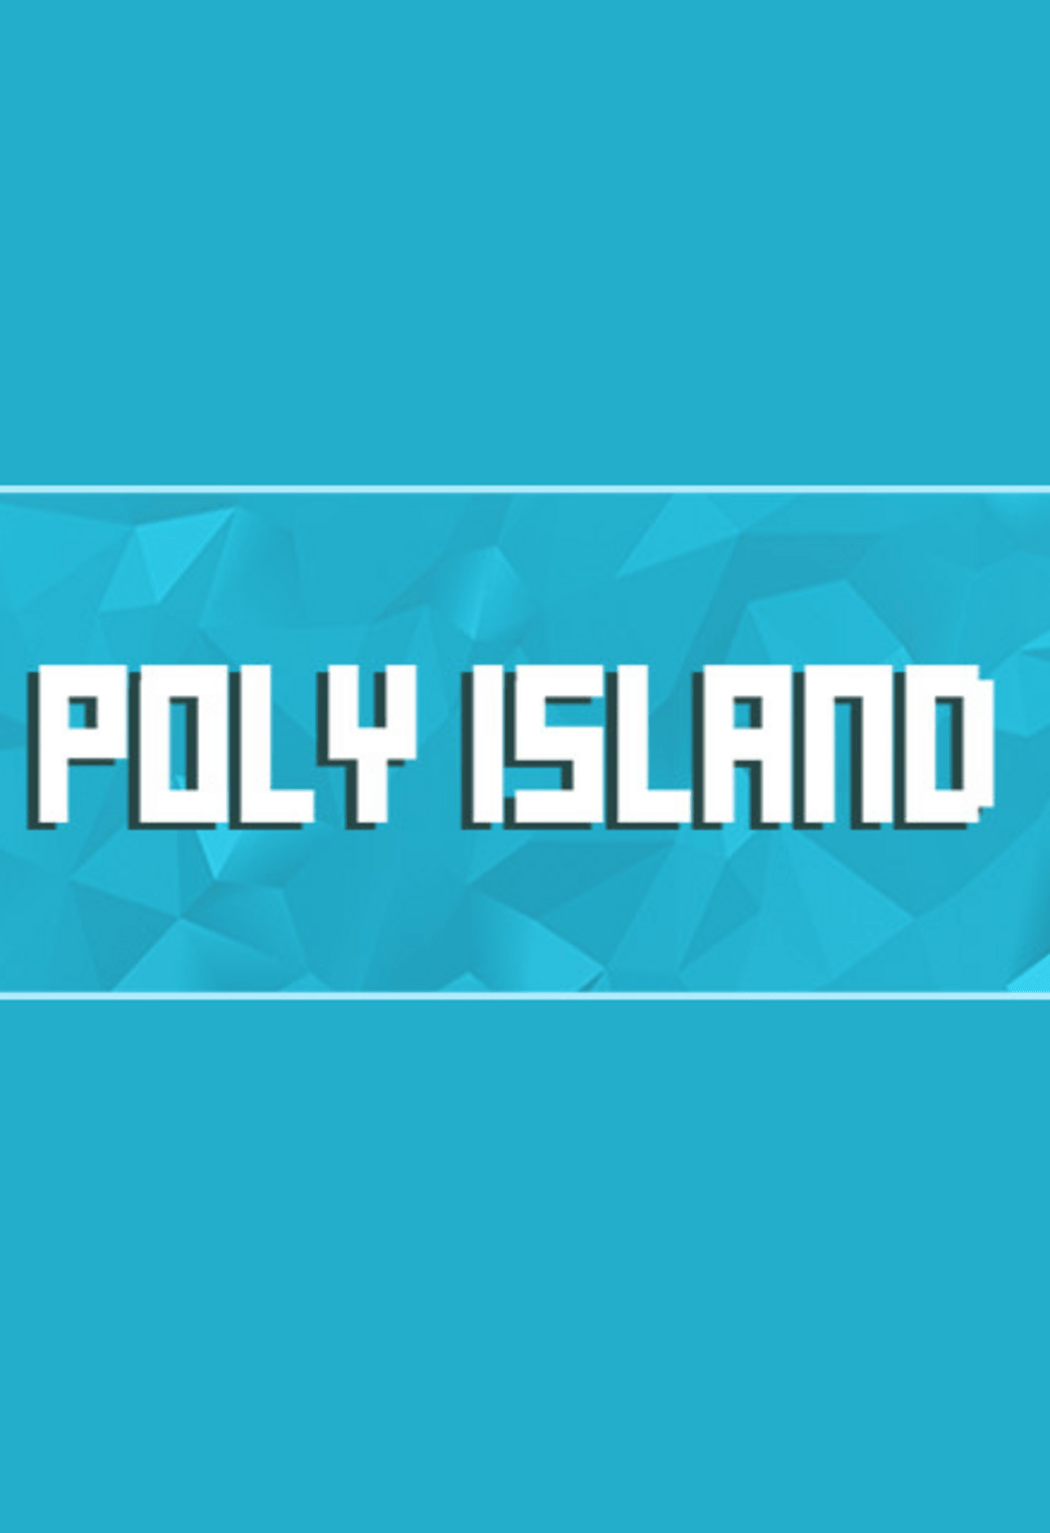 Poly Island Global Steam